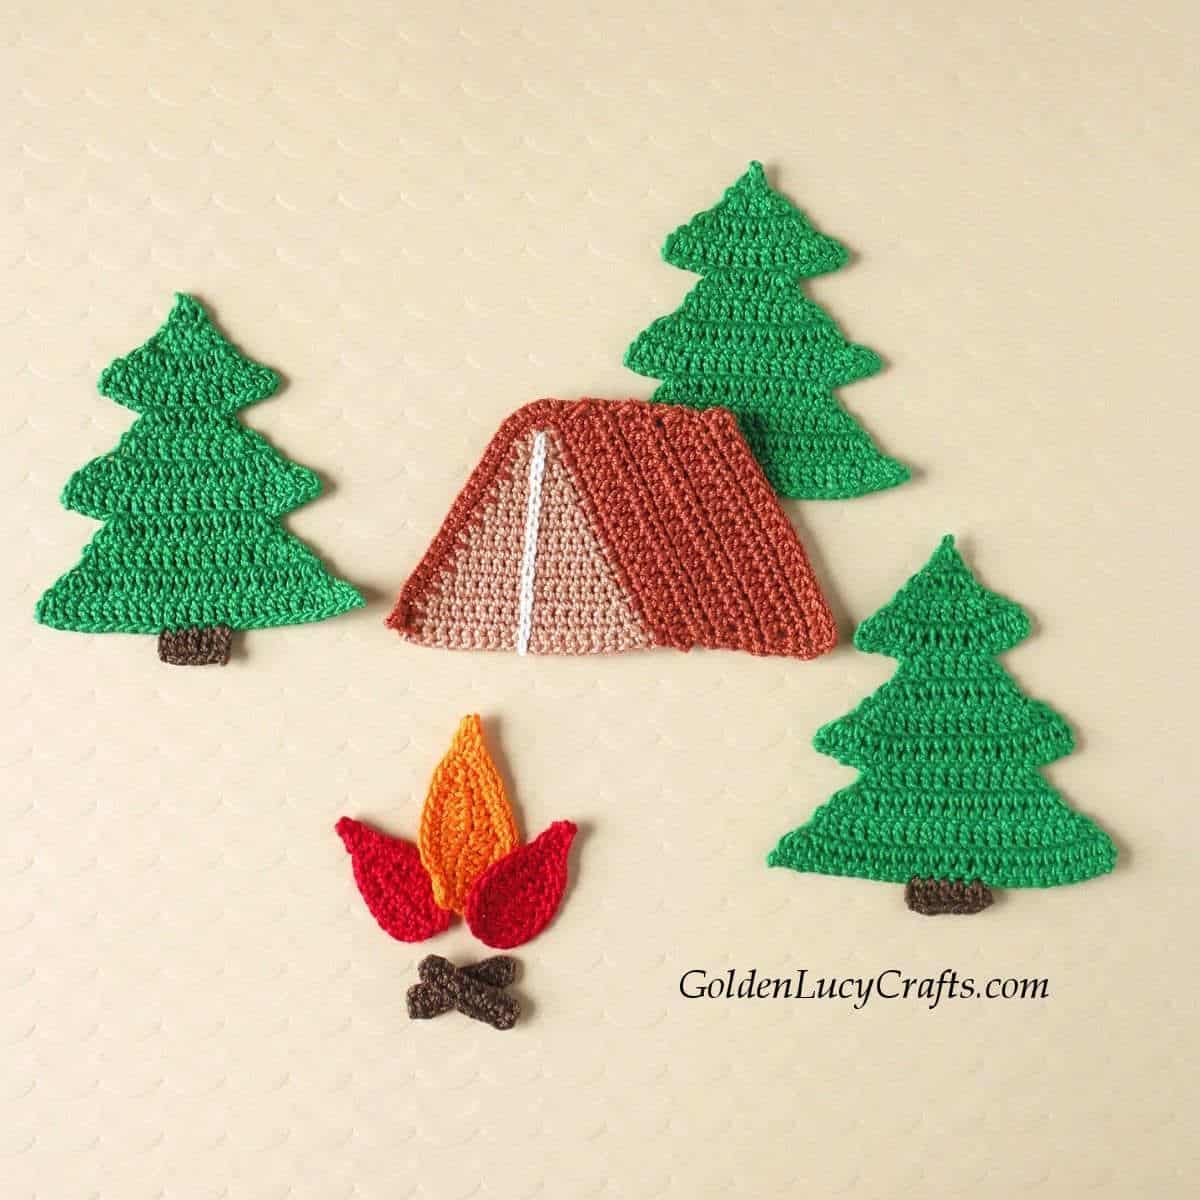 Crochet tent, fire and fir trees applique.